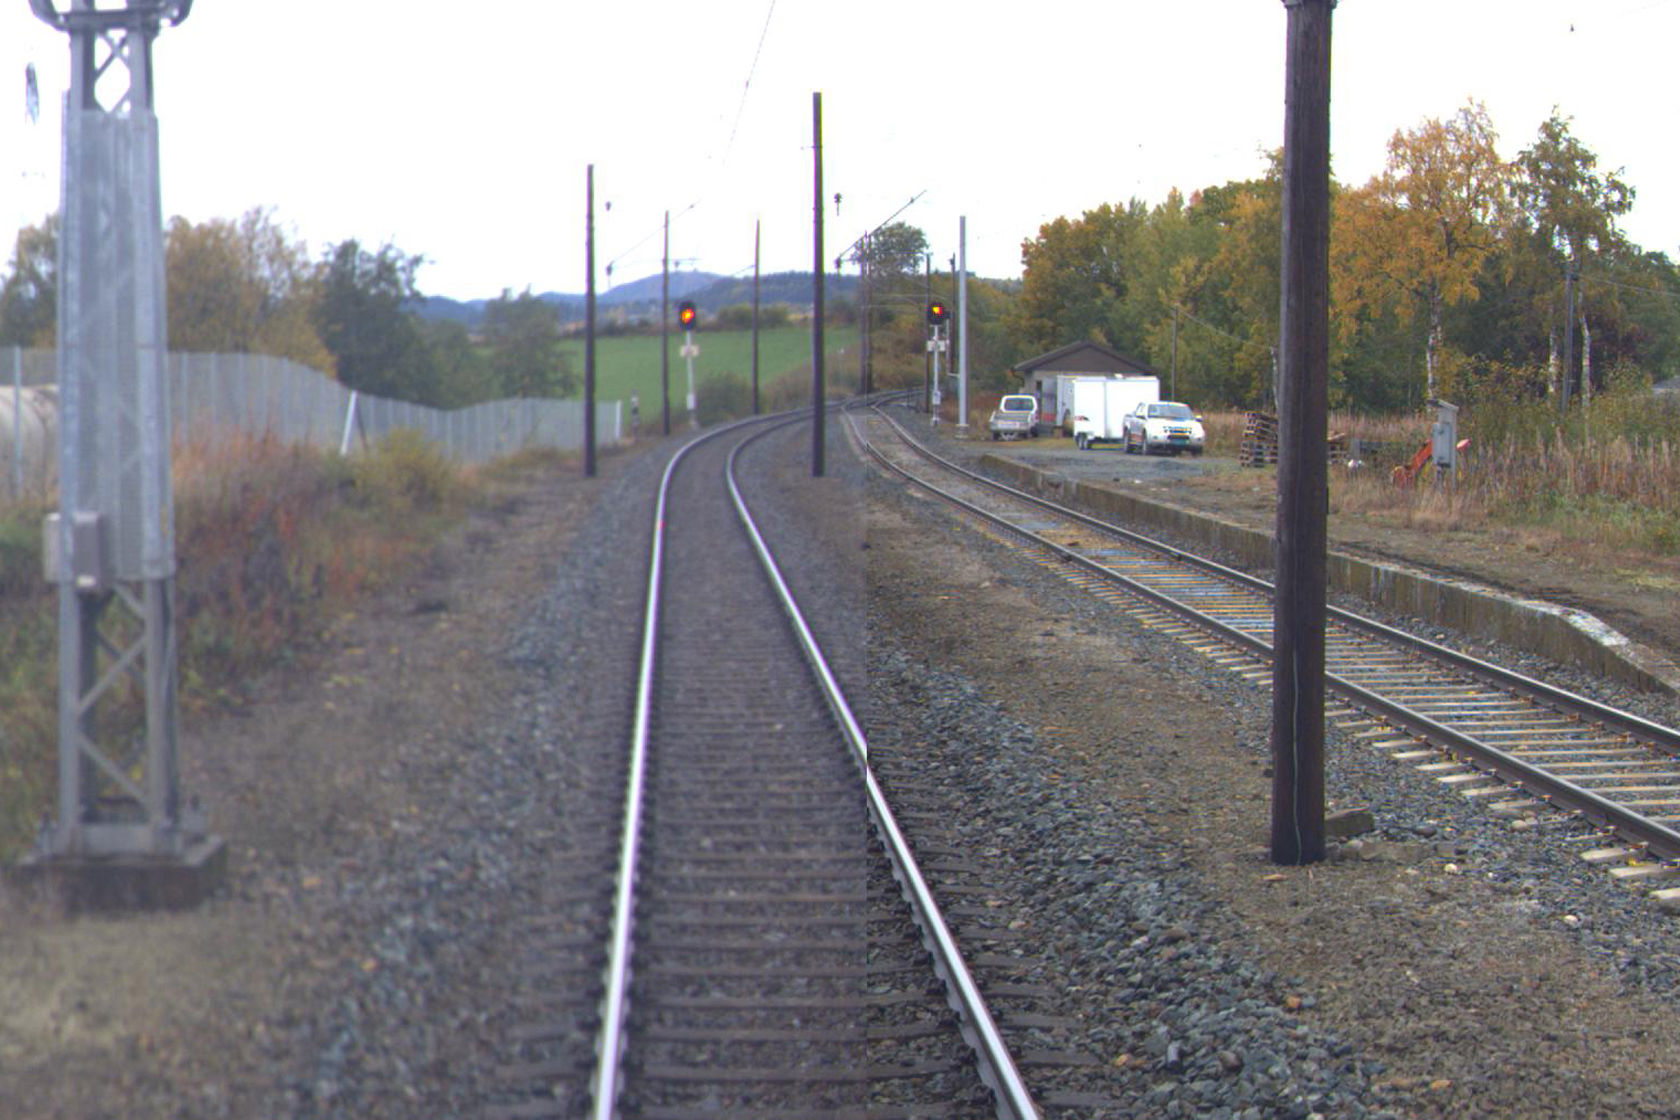 Tracks at Nypan station